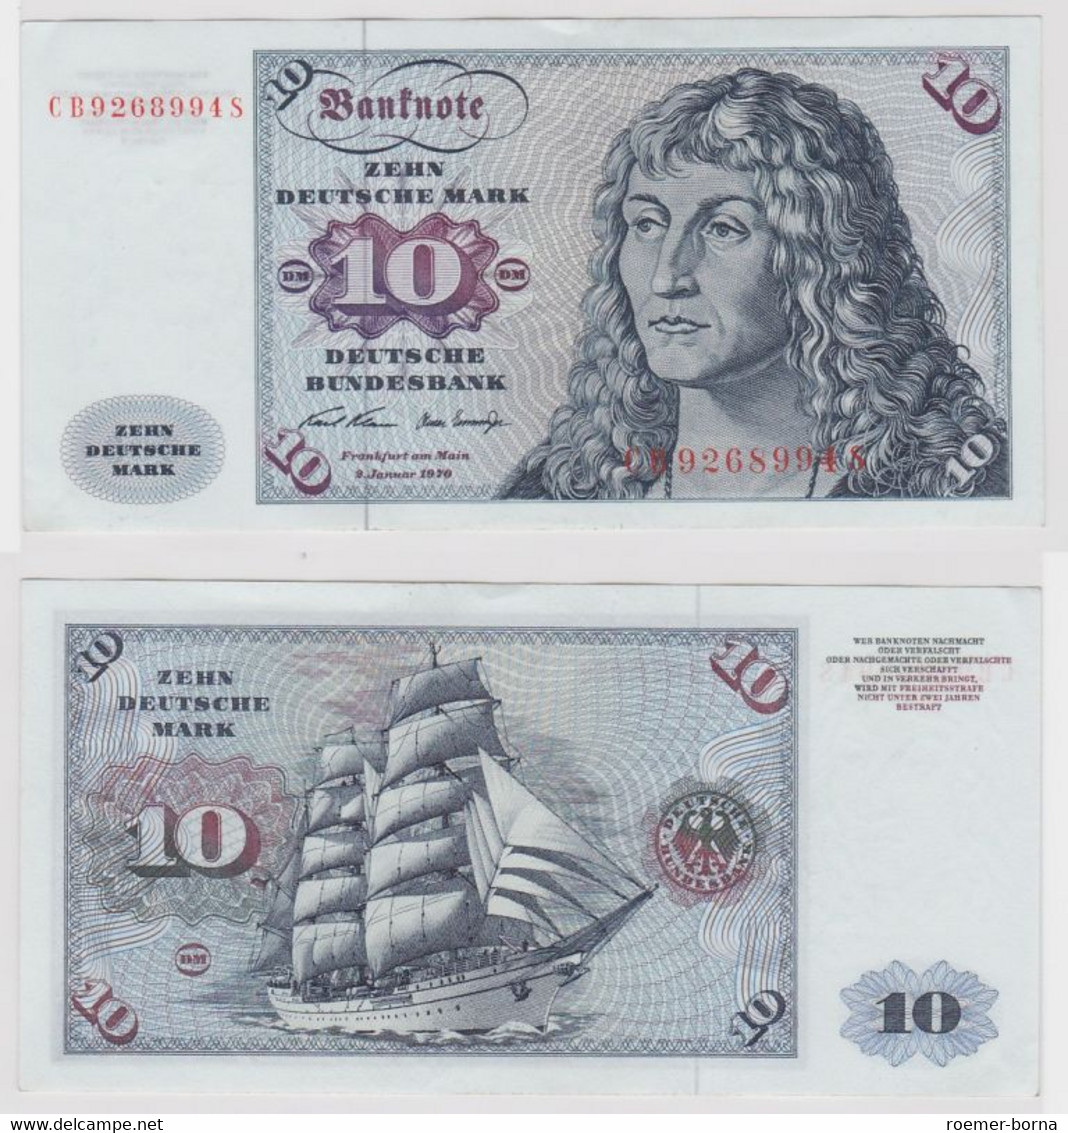 T146880 Banknote 10 DM Deutsche Mark Ro. 270a Schein 2.Jan. 1970 KN CB 9268994 S - 10 Deutsche Mark